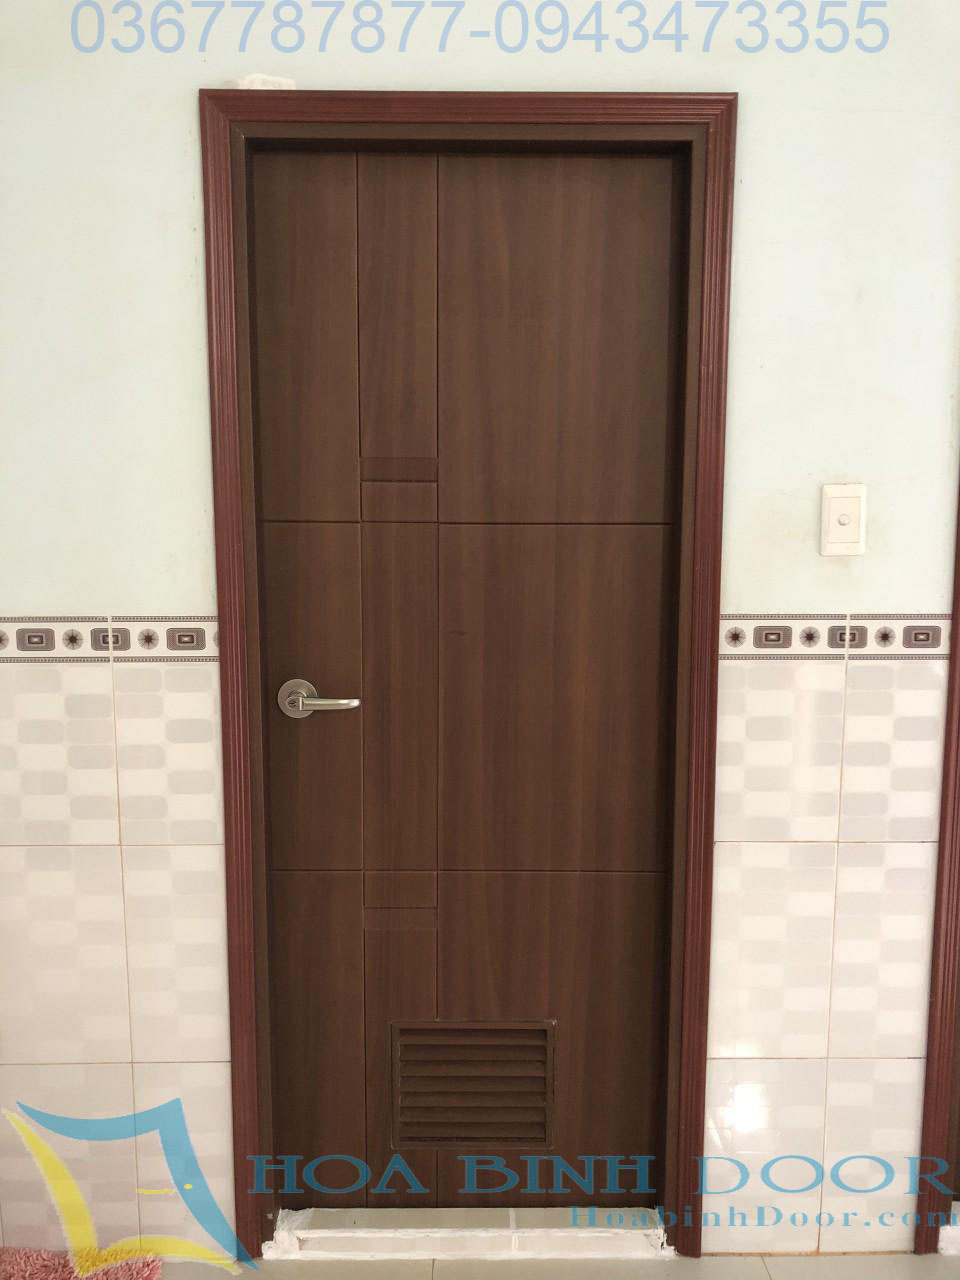 cửa nhà vệ sinh